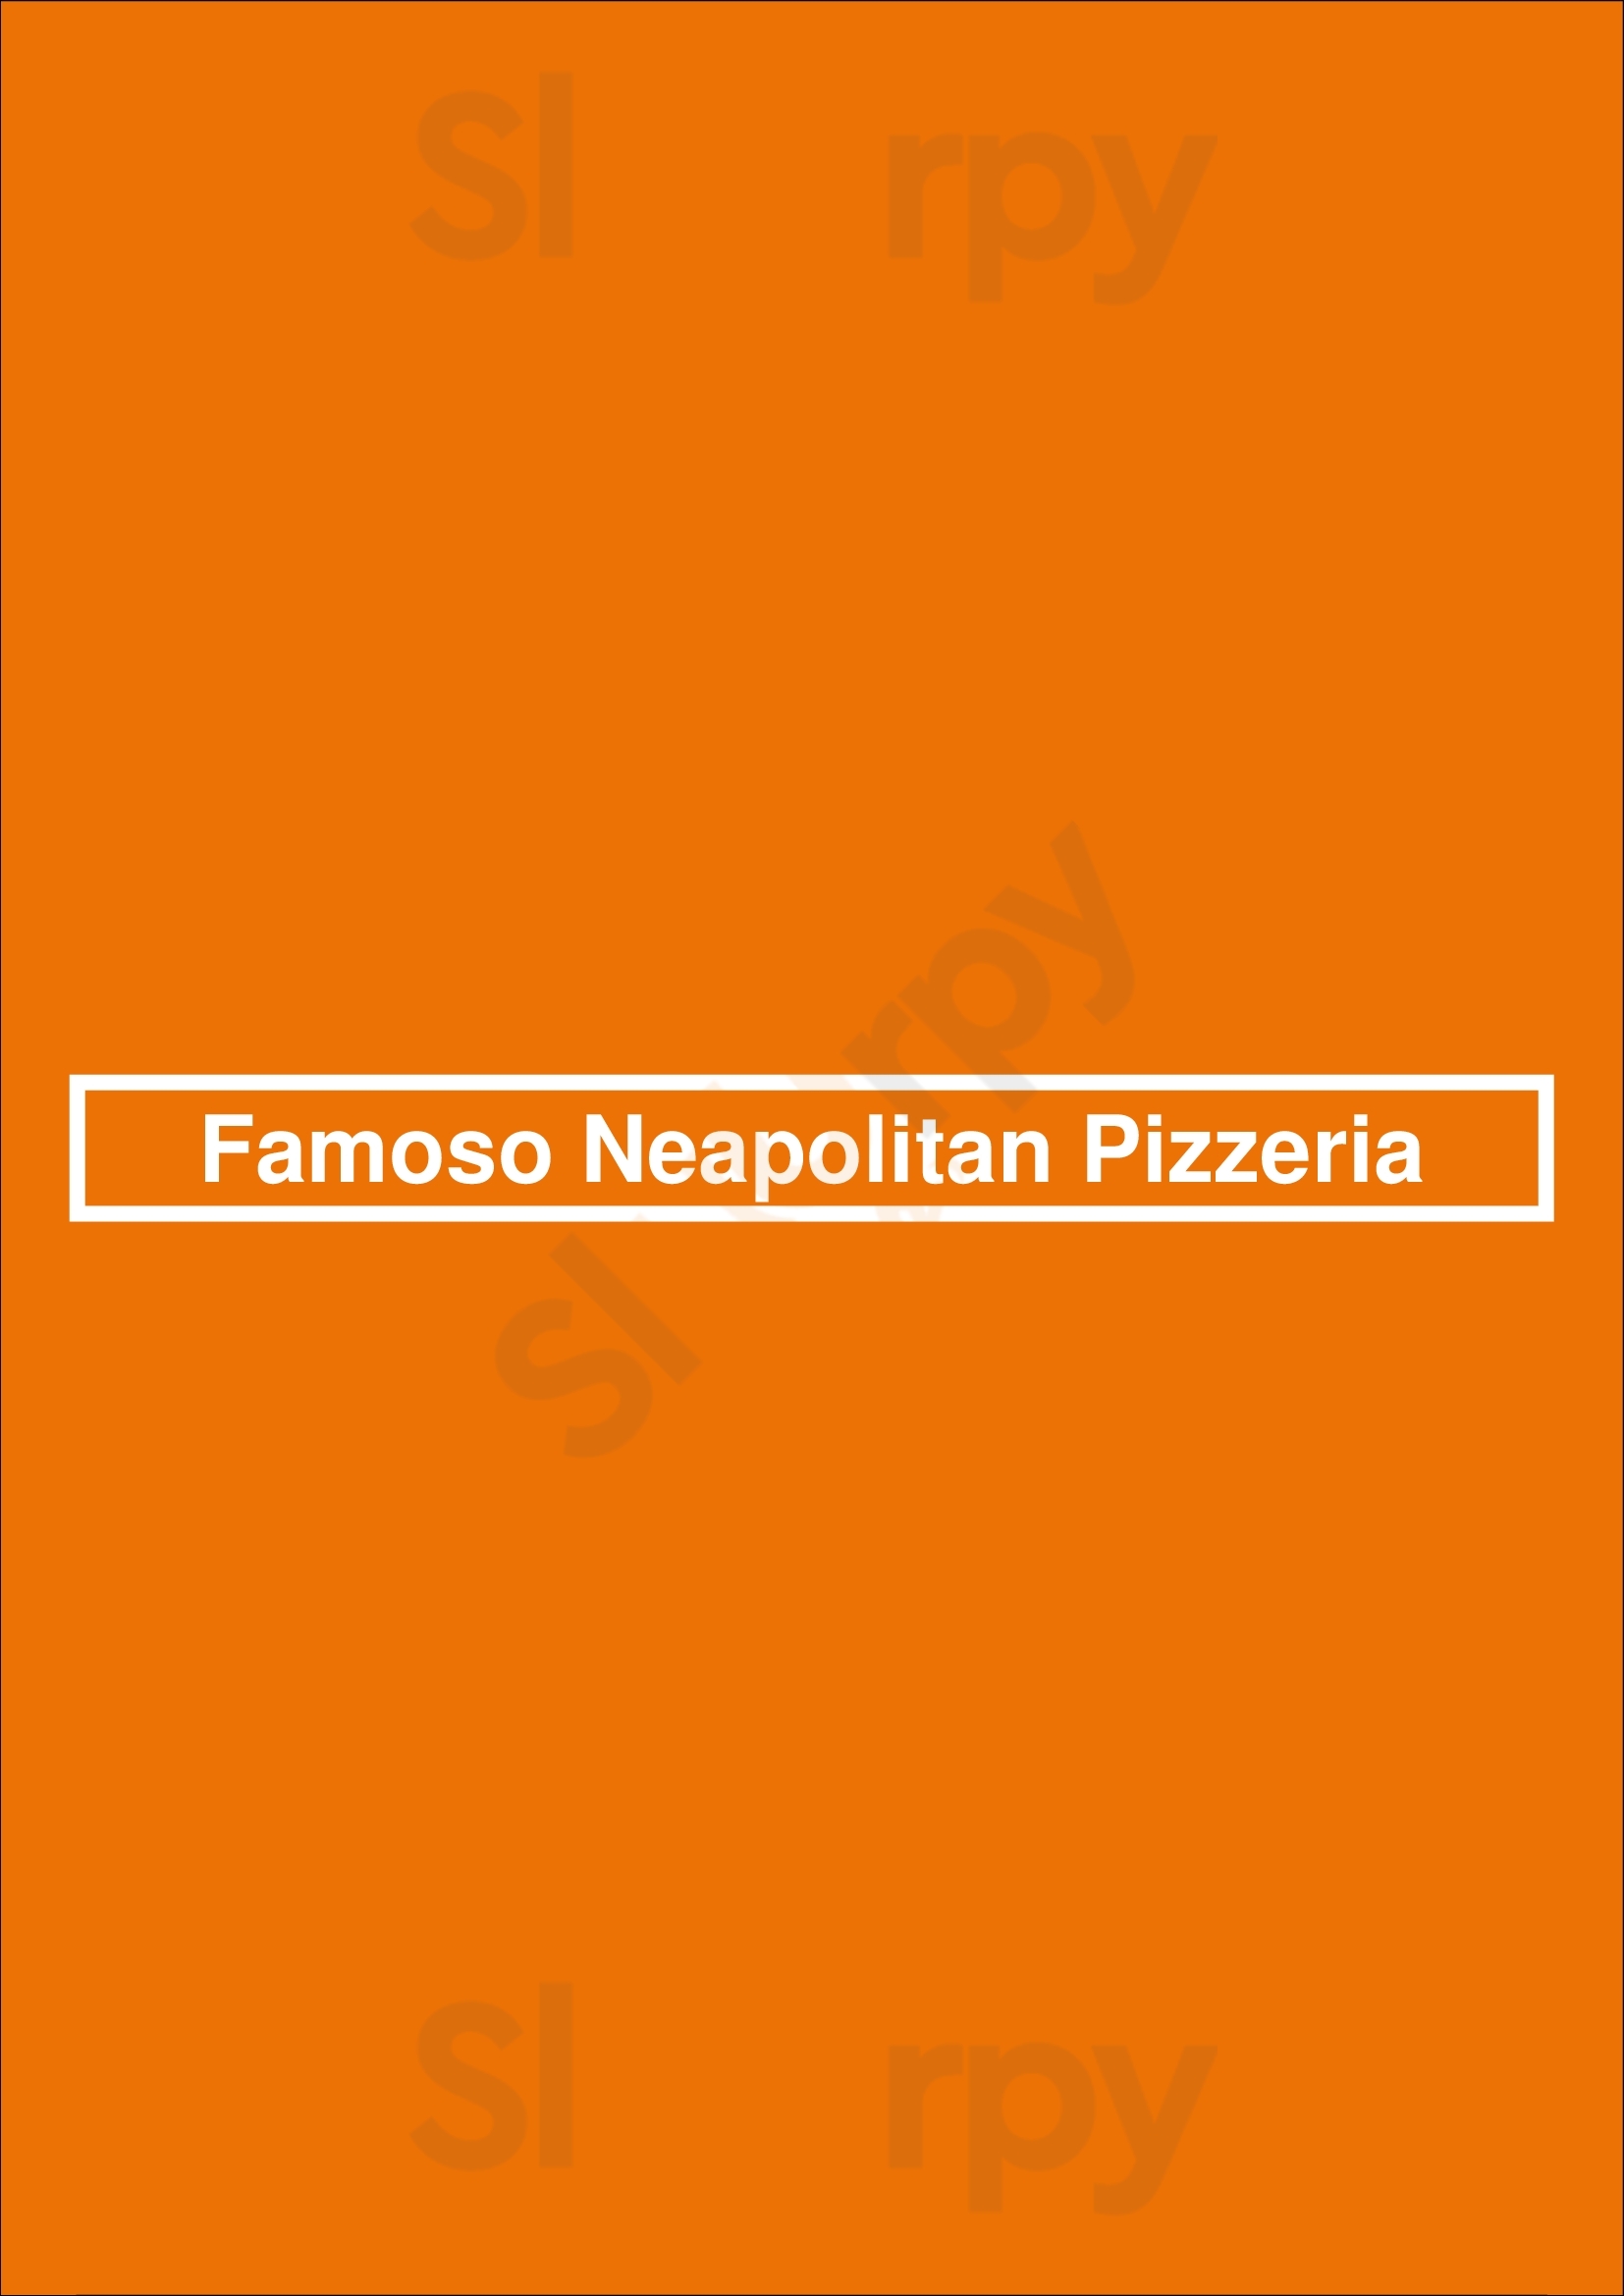 Famoso Neapolitan Pizzeria Vancouver Menu - 1